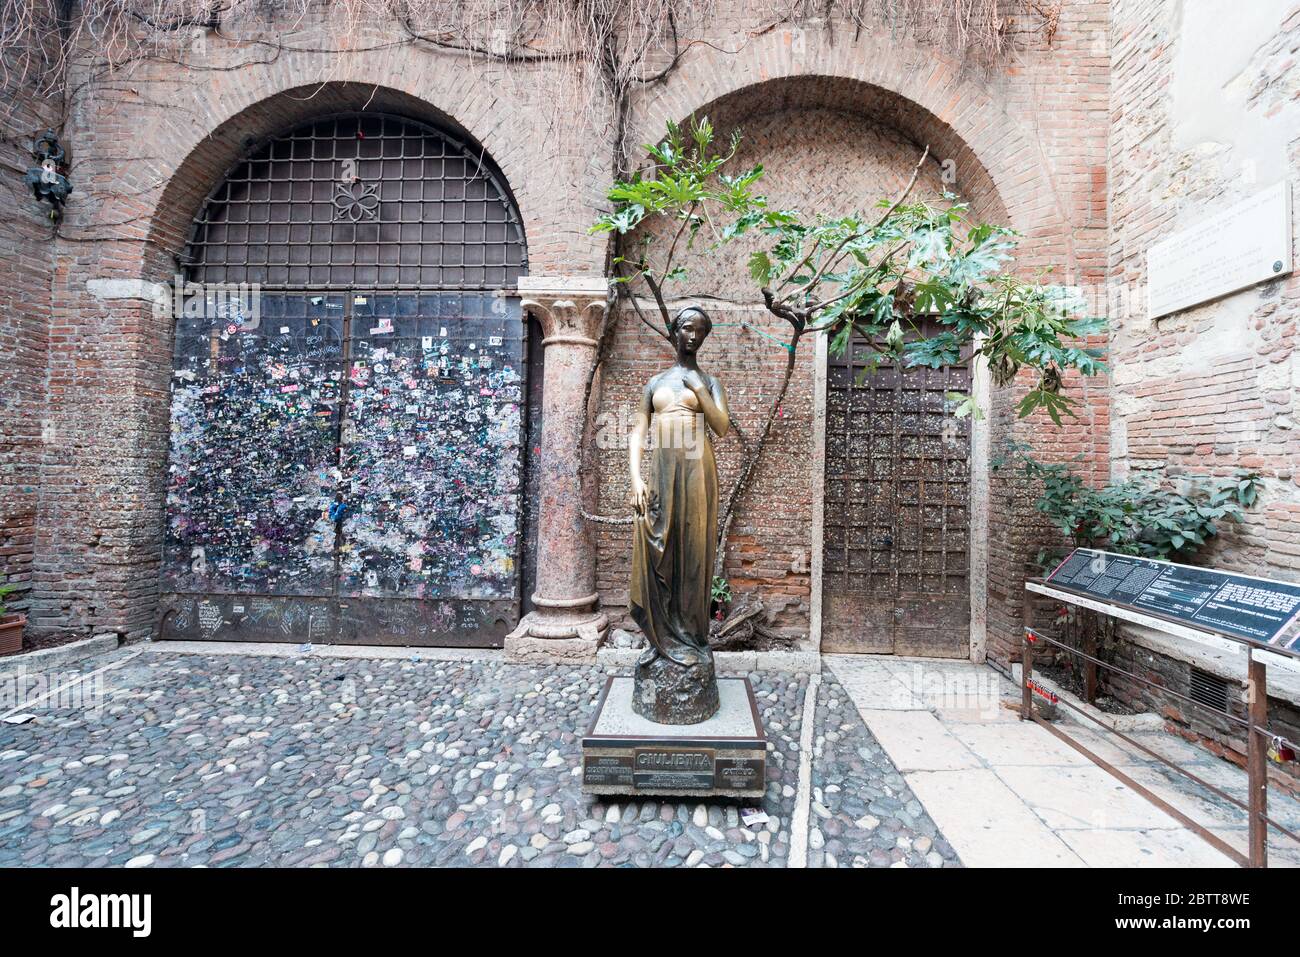 VERONA, ITALIA - 14 MARZO 2018: Immagine orizzontale della statua di Giulietta in bronzo, una famosa visita turistica di Verona Foto Stock